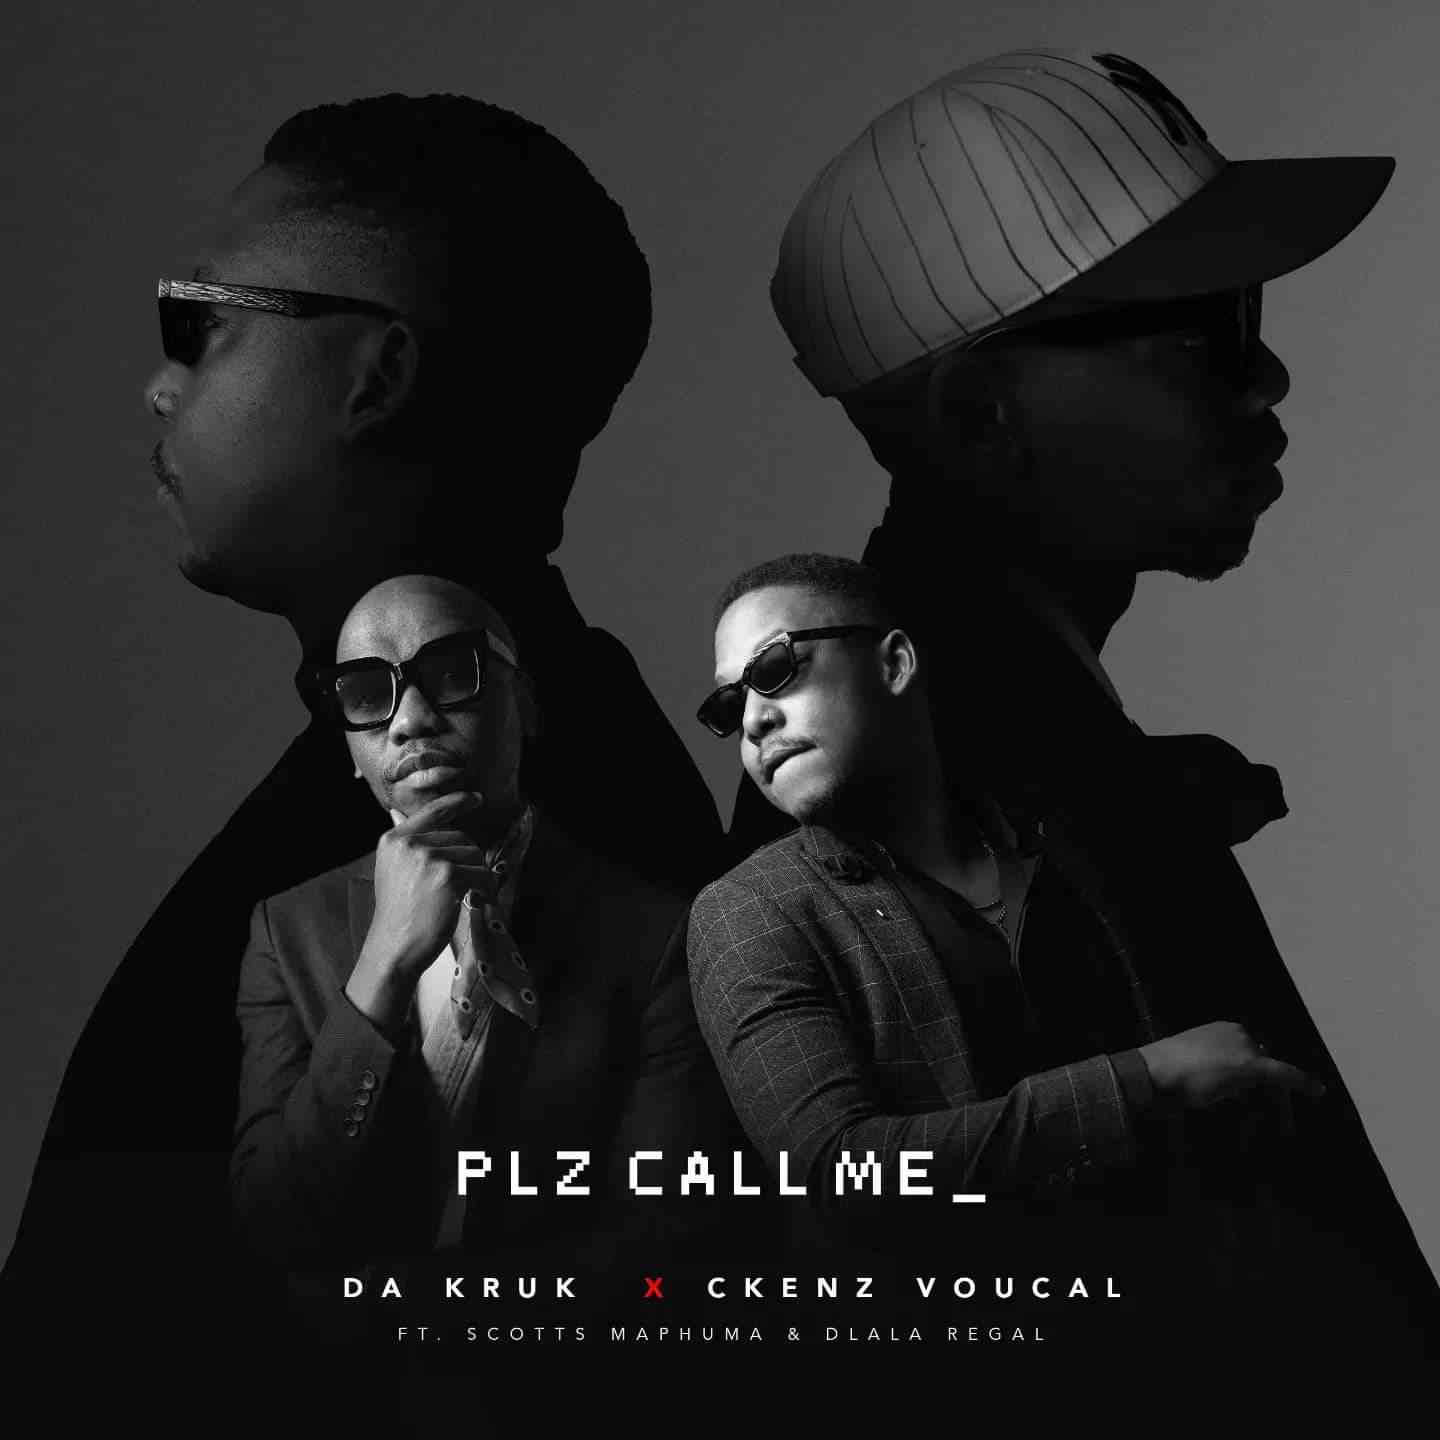 Da Kruk & Ckenz Voucal - Plz Call Me ft. Scotts Maphuma & Dlala Regal